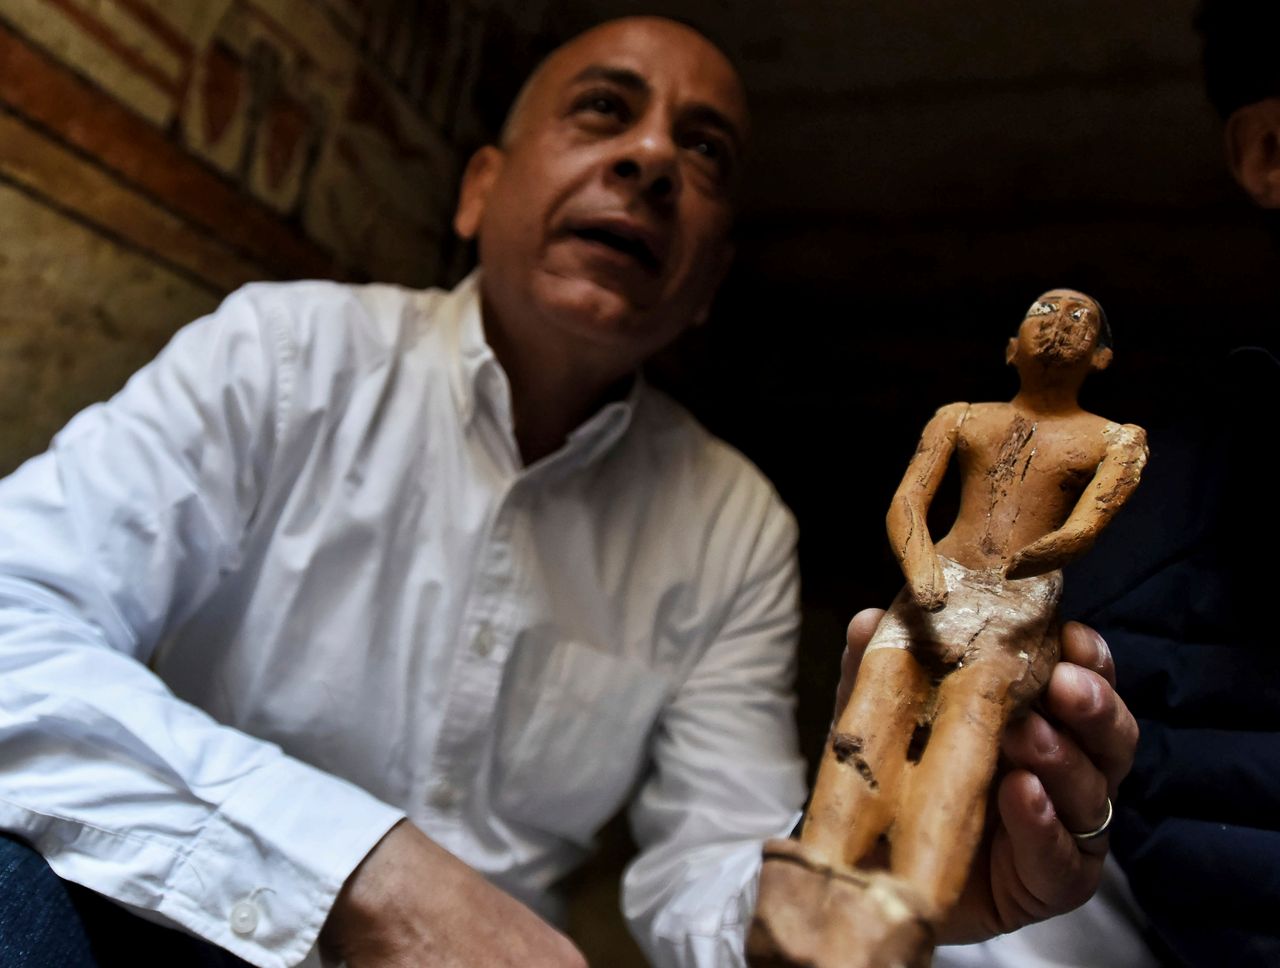 Ο Μοσταφά Ουαζιρί Γενικός Γραμματέας του Ανώτατου Συμβουλίου Αρχαιοτήτων, επιδεικνύει ένα μικρό άγαλμα σε έναν τάφο διακοσμημένο με ιερογλυφικά.